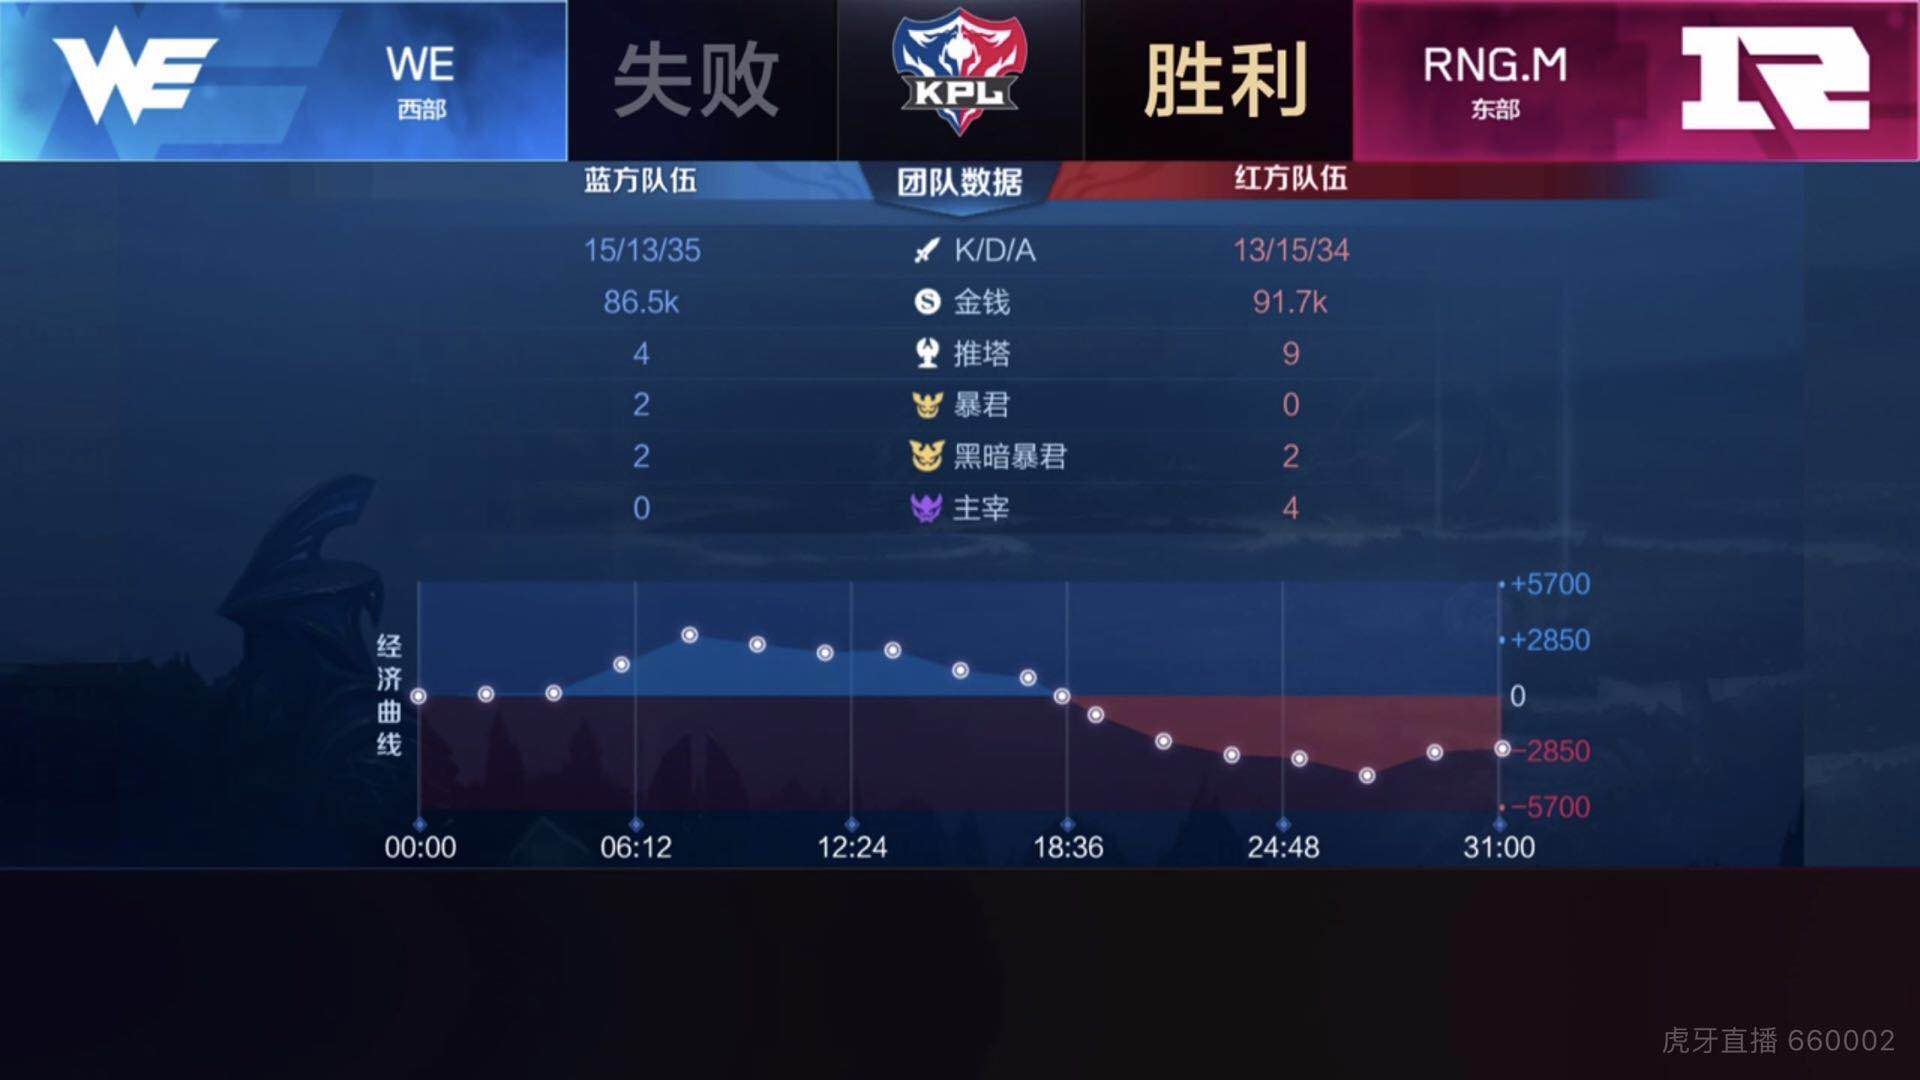 [战报] RNG.M连下三城击败WE 向胜者组发起冲击